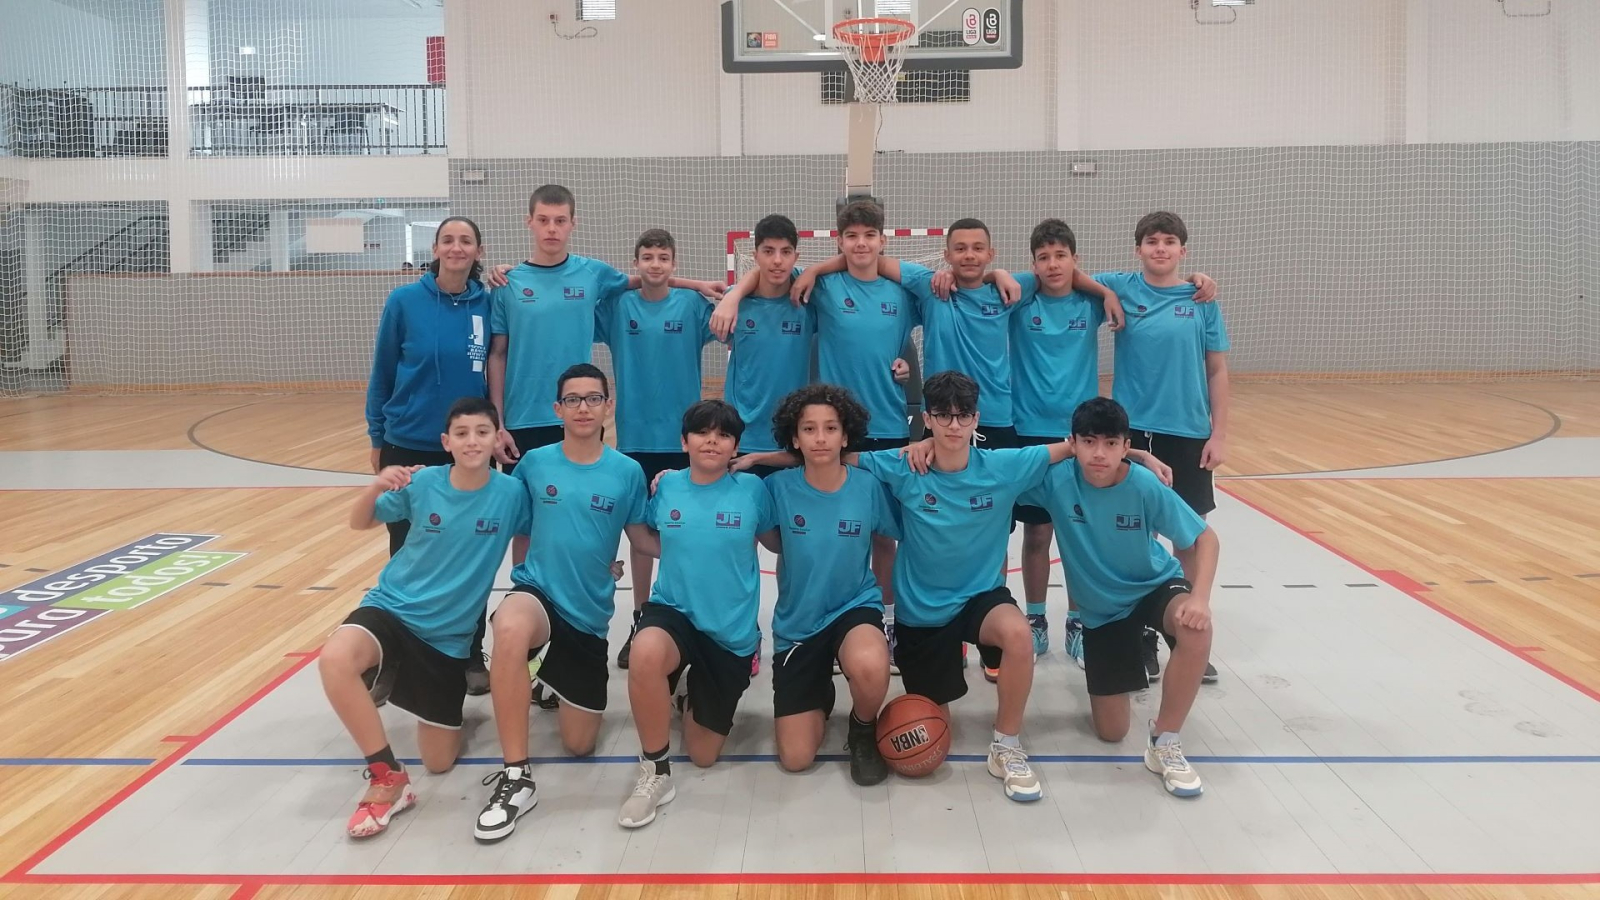 Desporto Escolar - Basquetebol